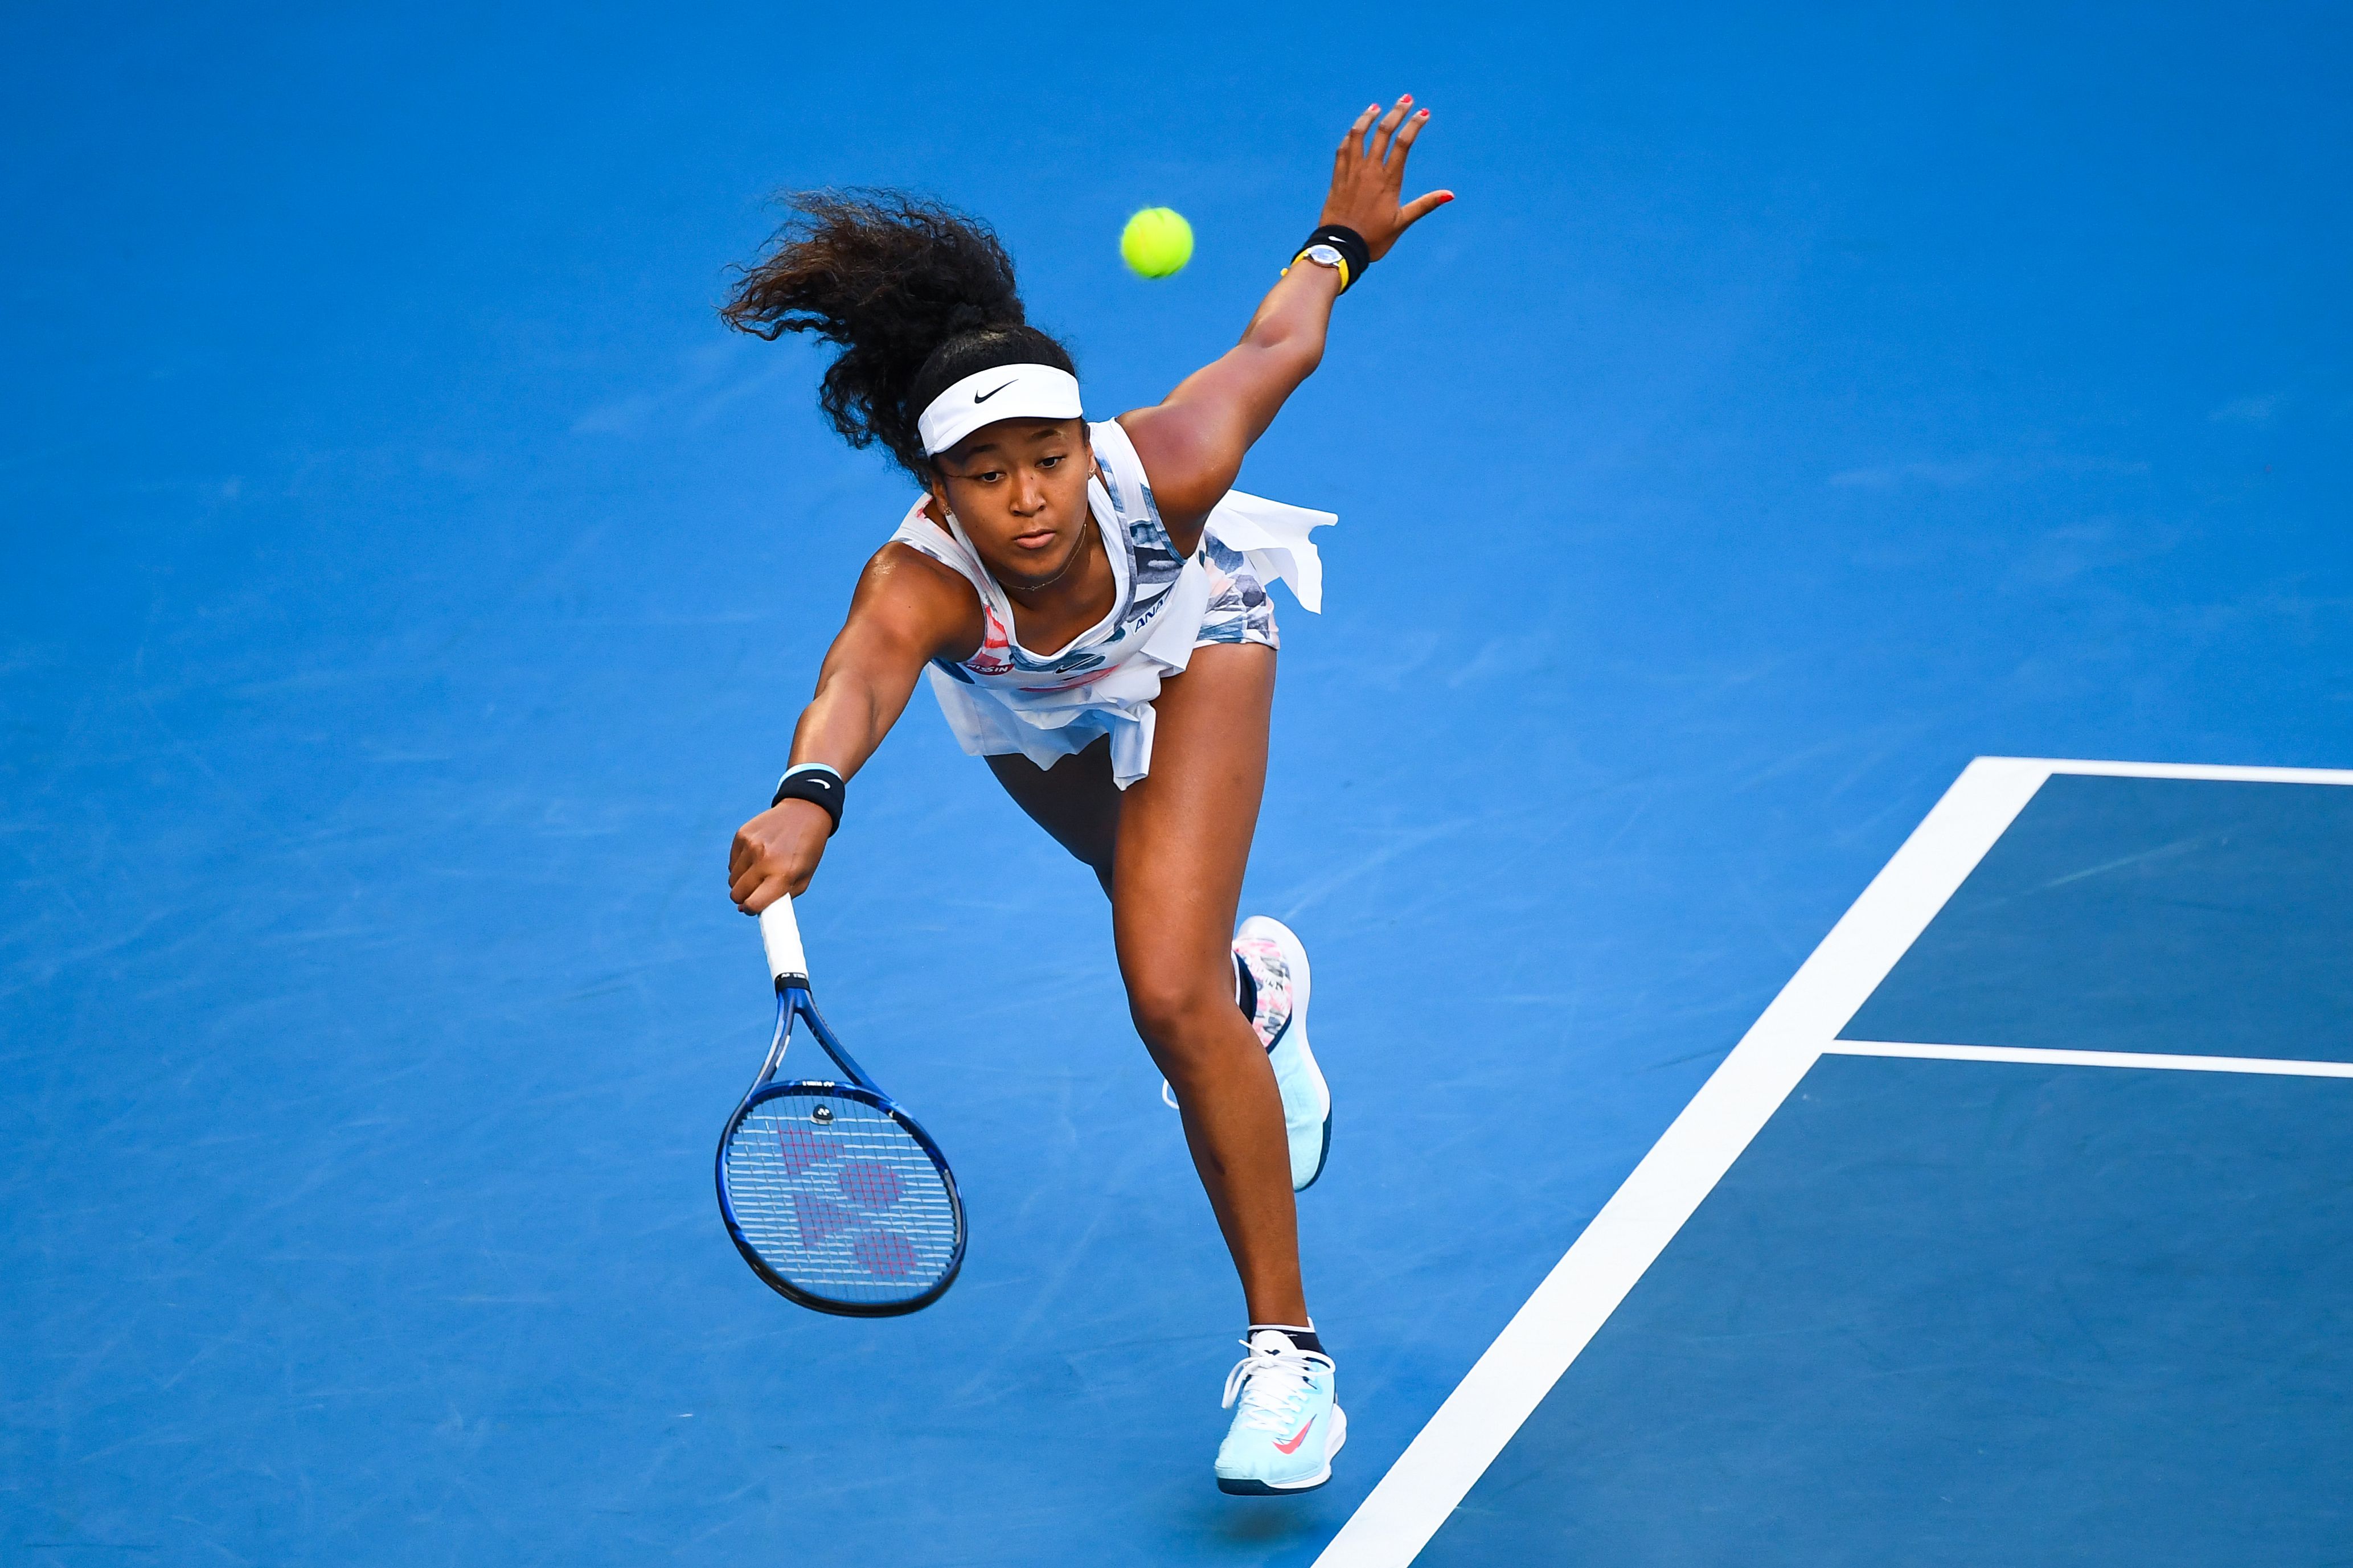 Osaka destrona Serena Williams como la atleta pagada del mundo, según lista Forbes 2020 | Otros Deportes | Deportes | El Universo